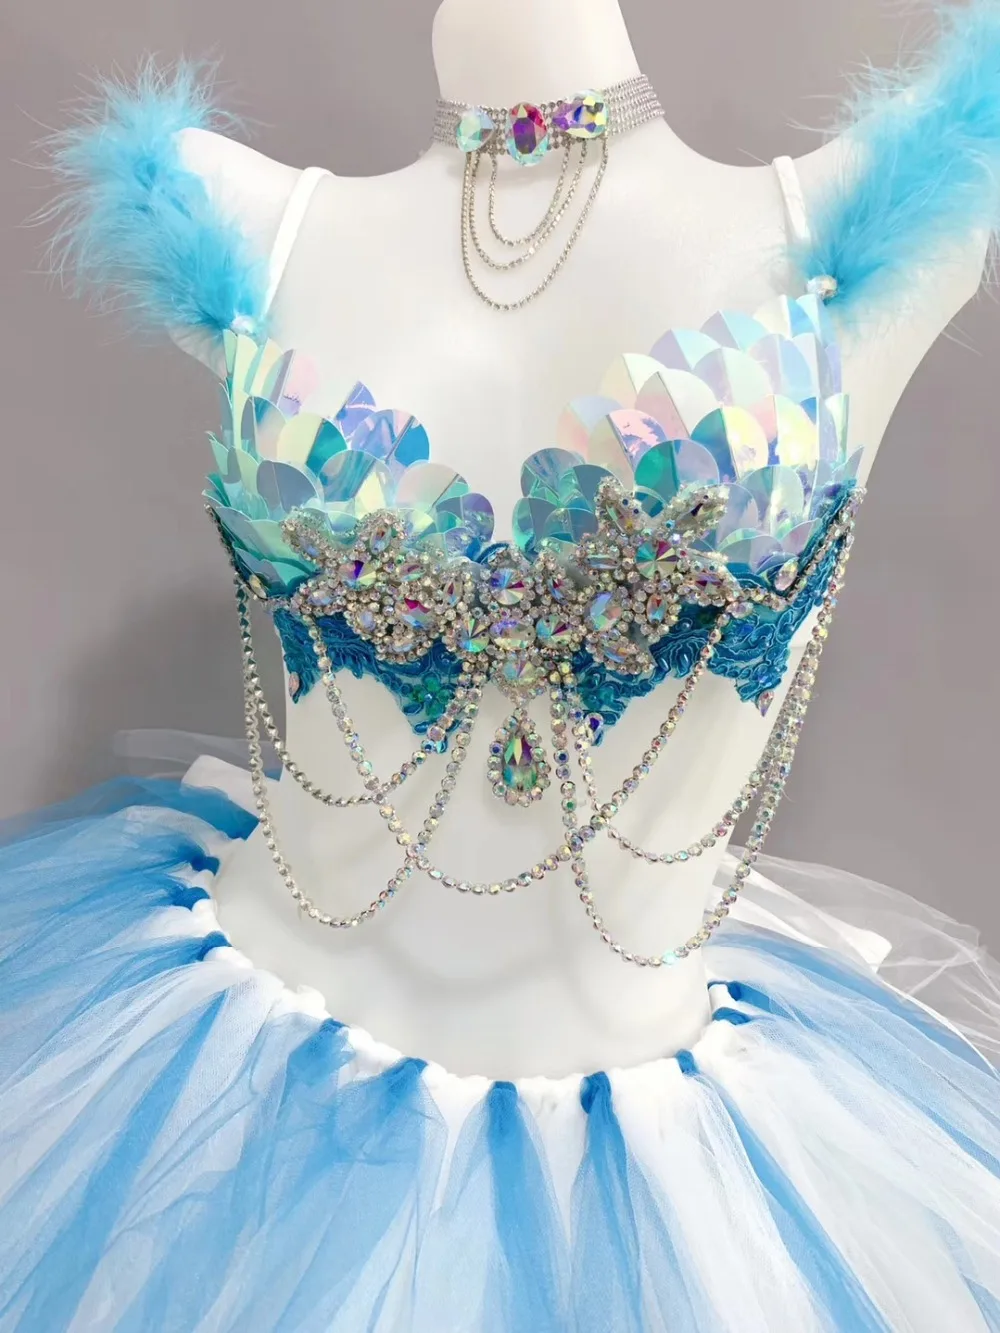 Женский костюм с кристаллами выставочная модель подиума сценический наряд блестящие стразы бикини полюс танцы DJ певица танцевальная